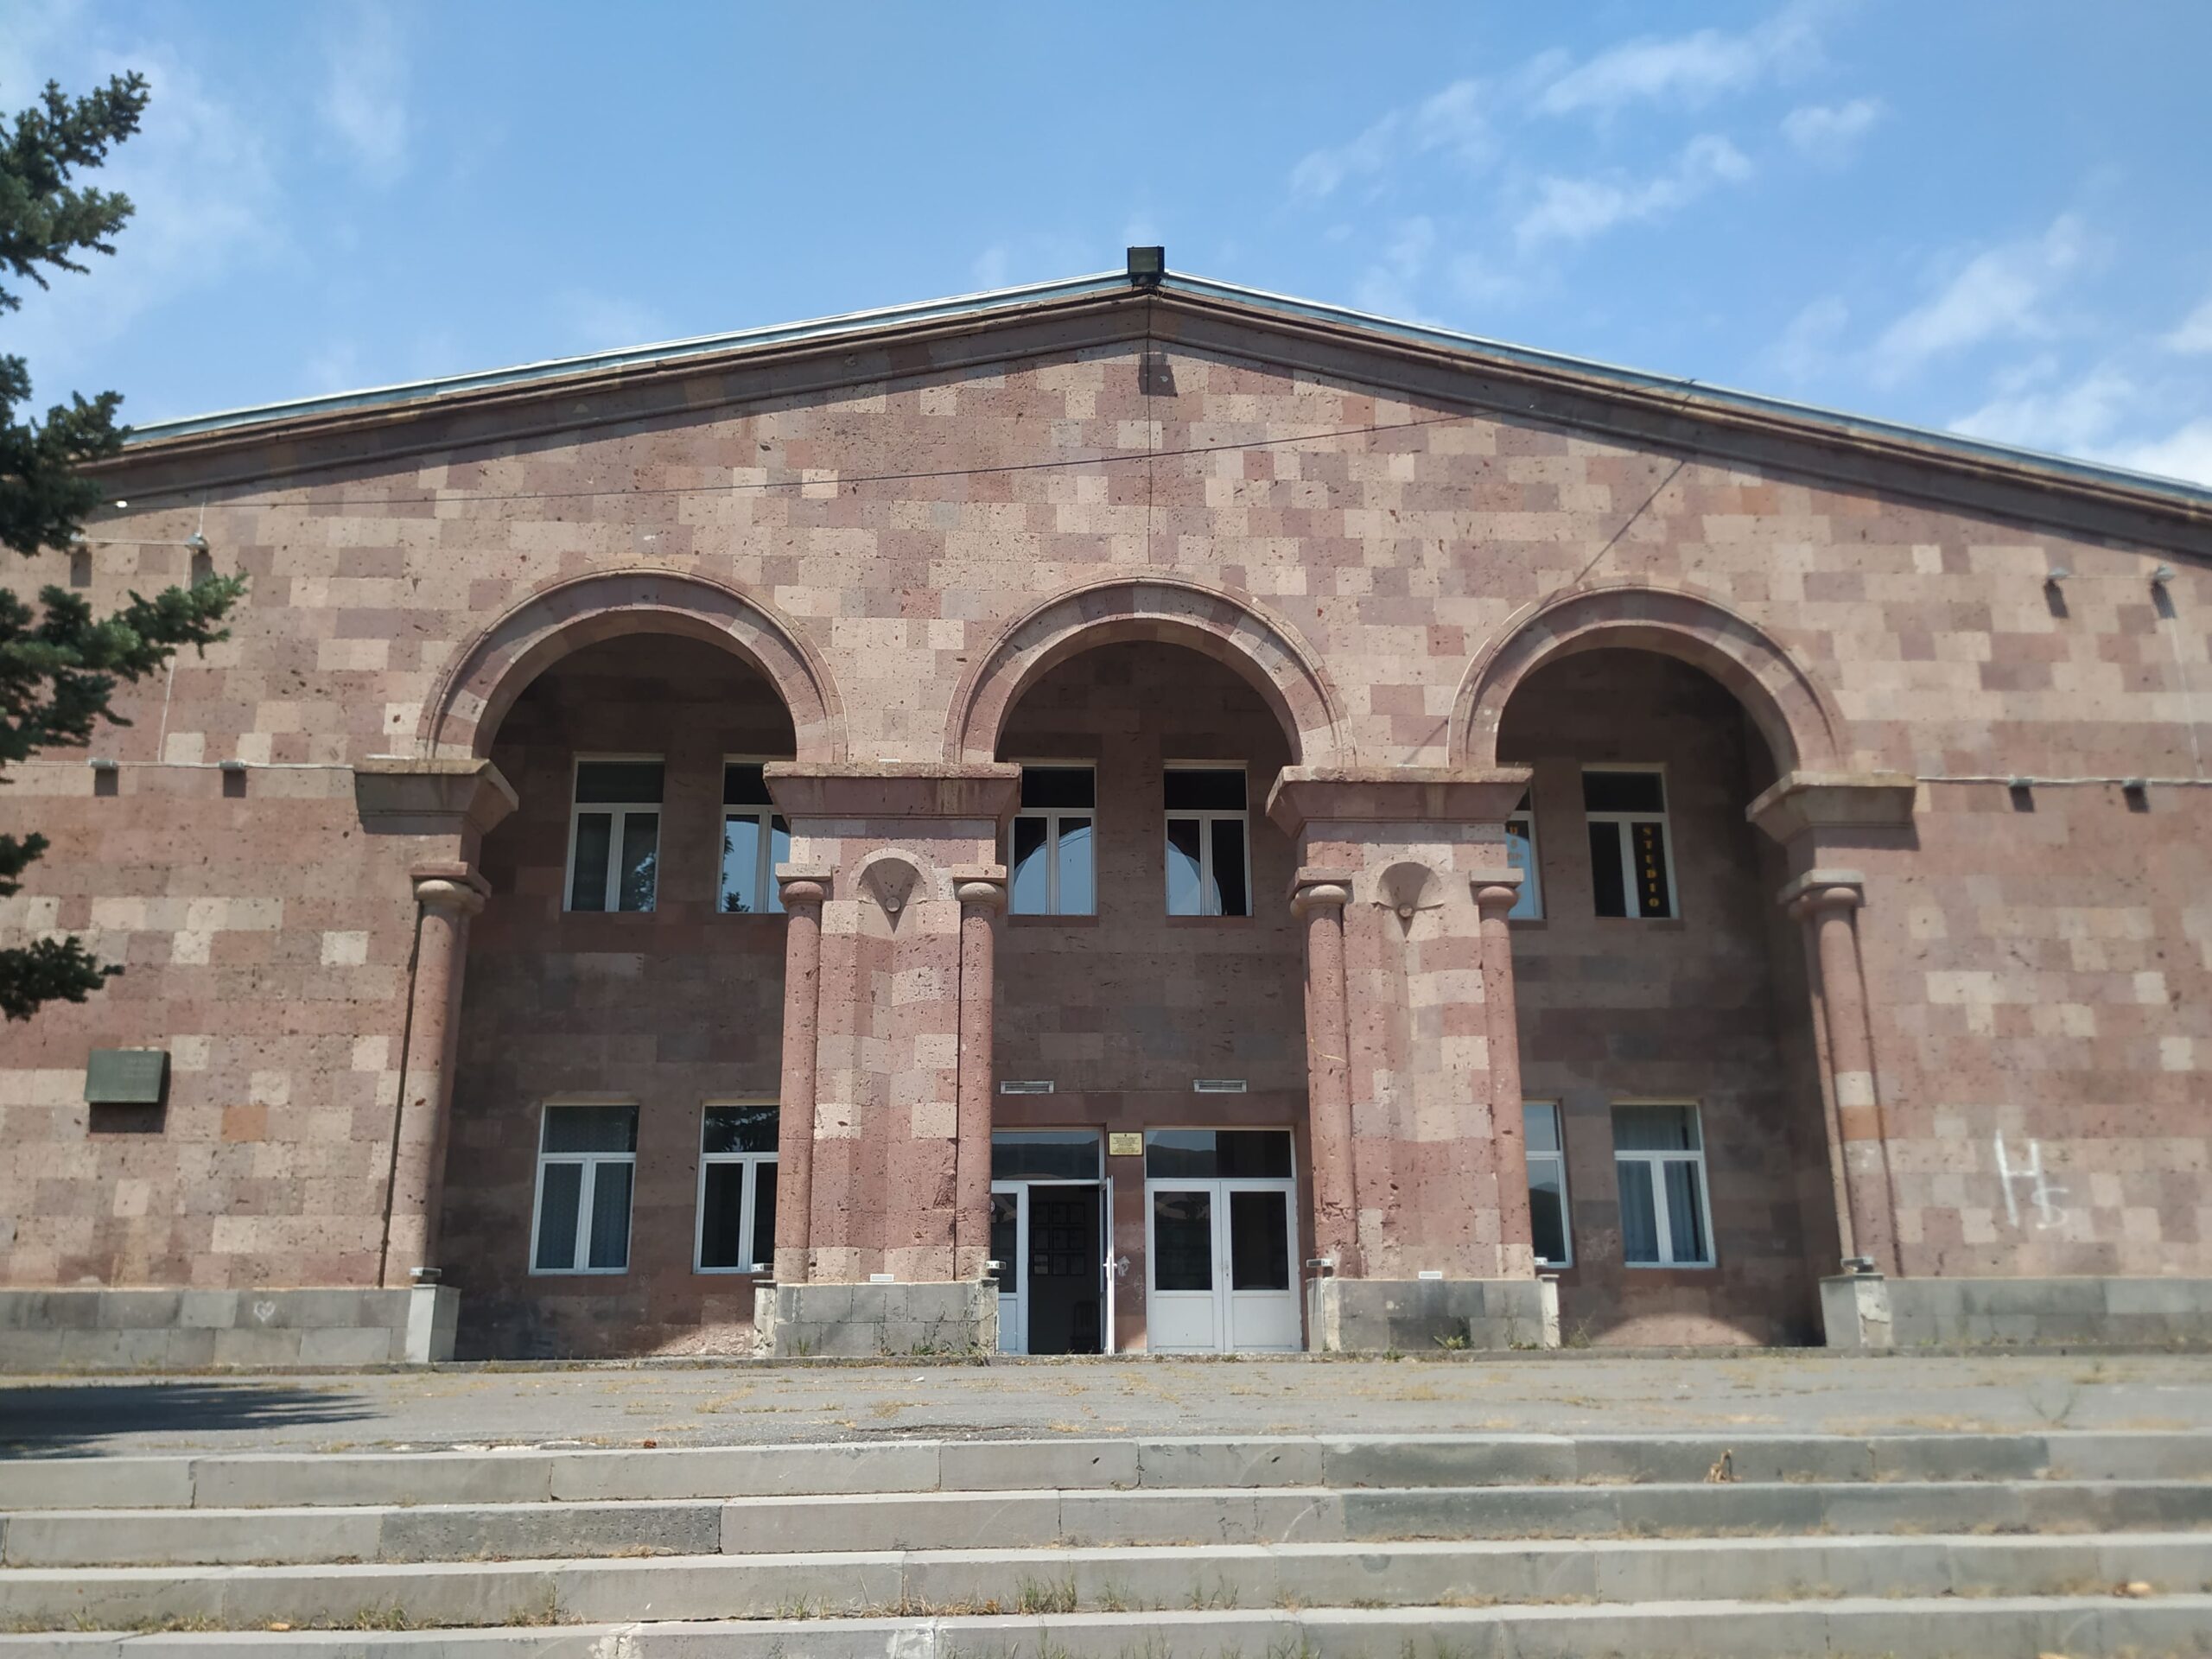 Չարենցավանի ակումբի շենքը (այժմ՝ Կ. Դեմիրճյանի անվան մշակույթի տուն)